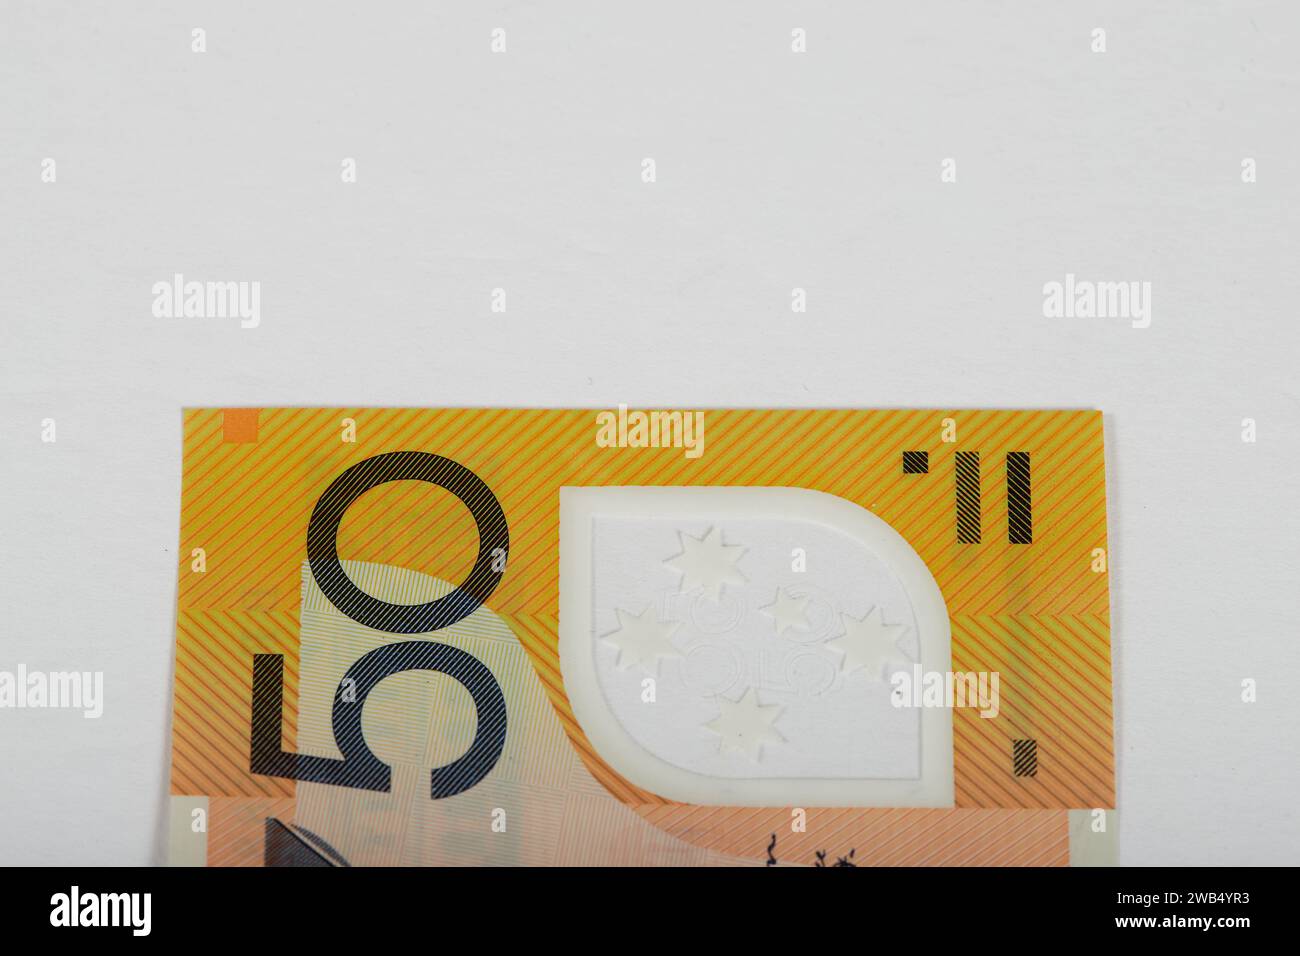 Valuta australiana, banconote in polimero e monete con animali australiani sul lato anteriore e la regina Elisabetta II sul lato posteriore! Foto Stock